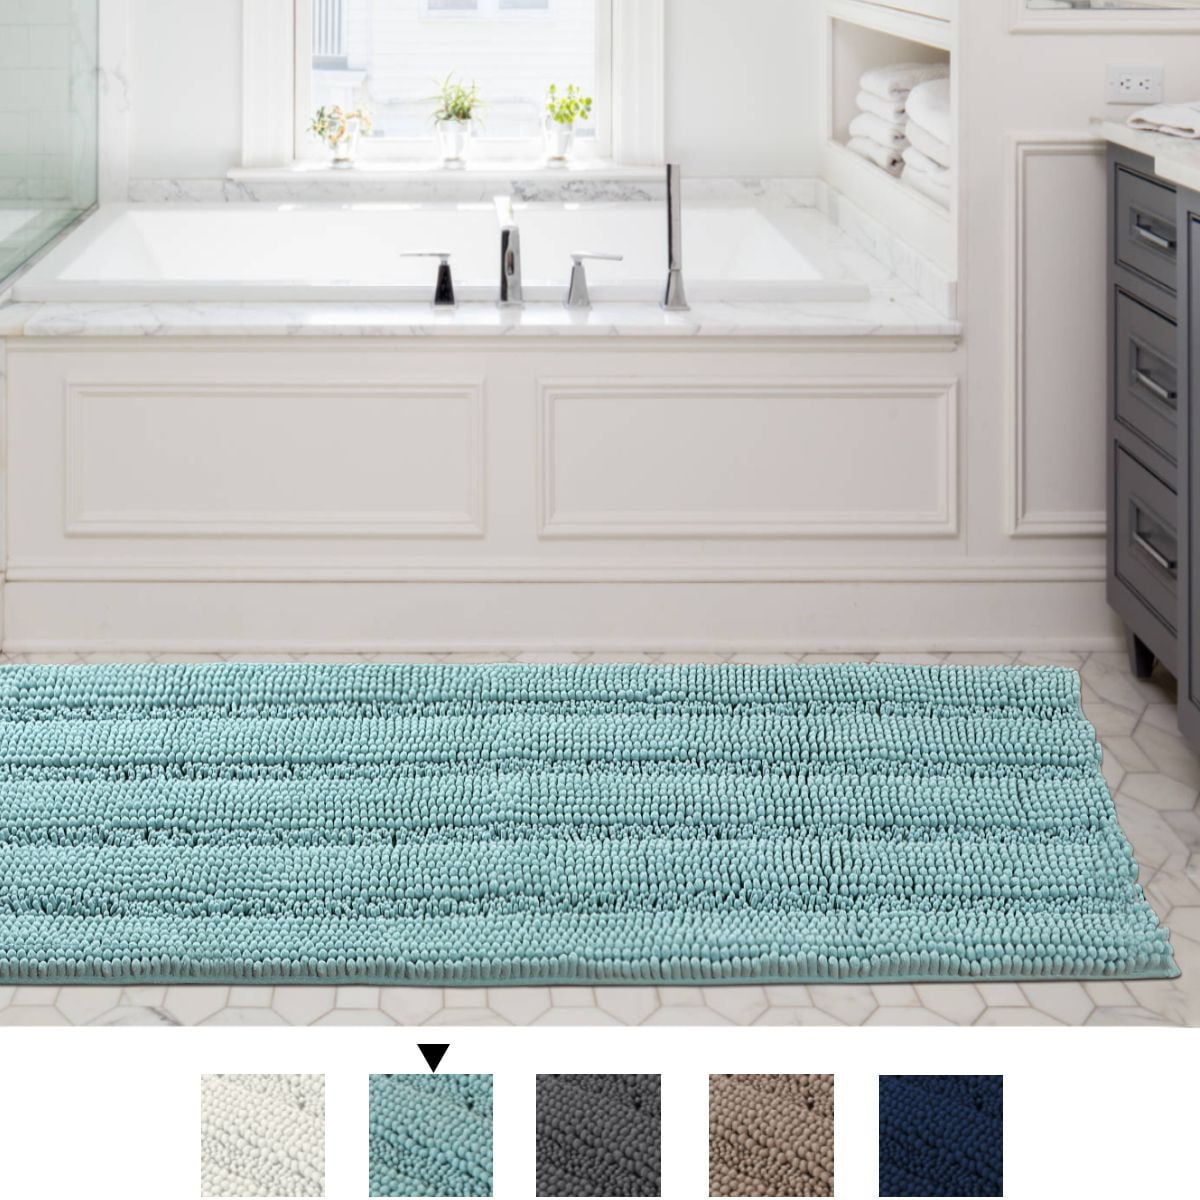 47x17 Inch Large Luxury Grey Striped Bath Mat Soft Shaggy Bathroom